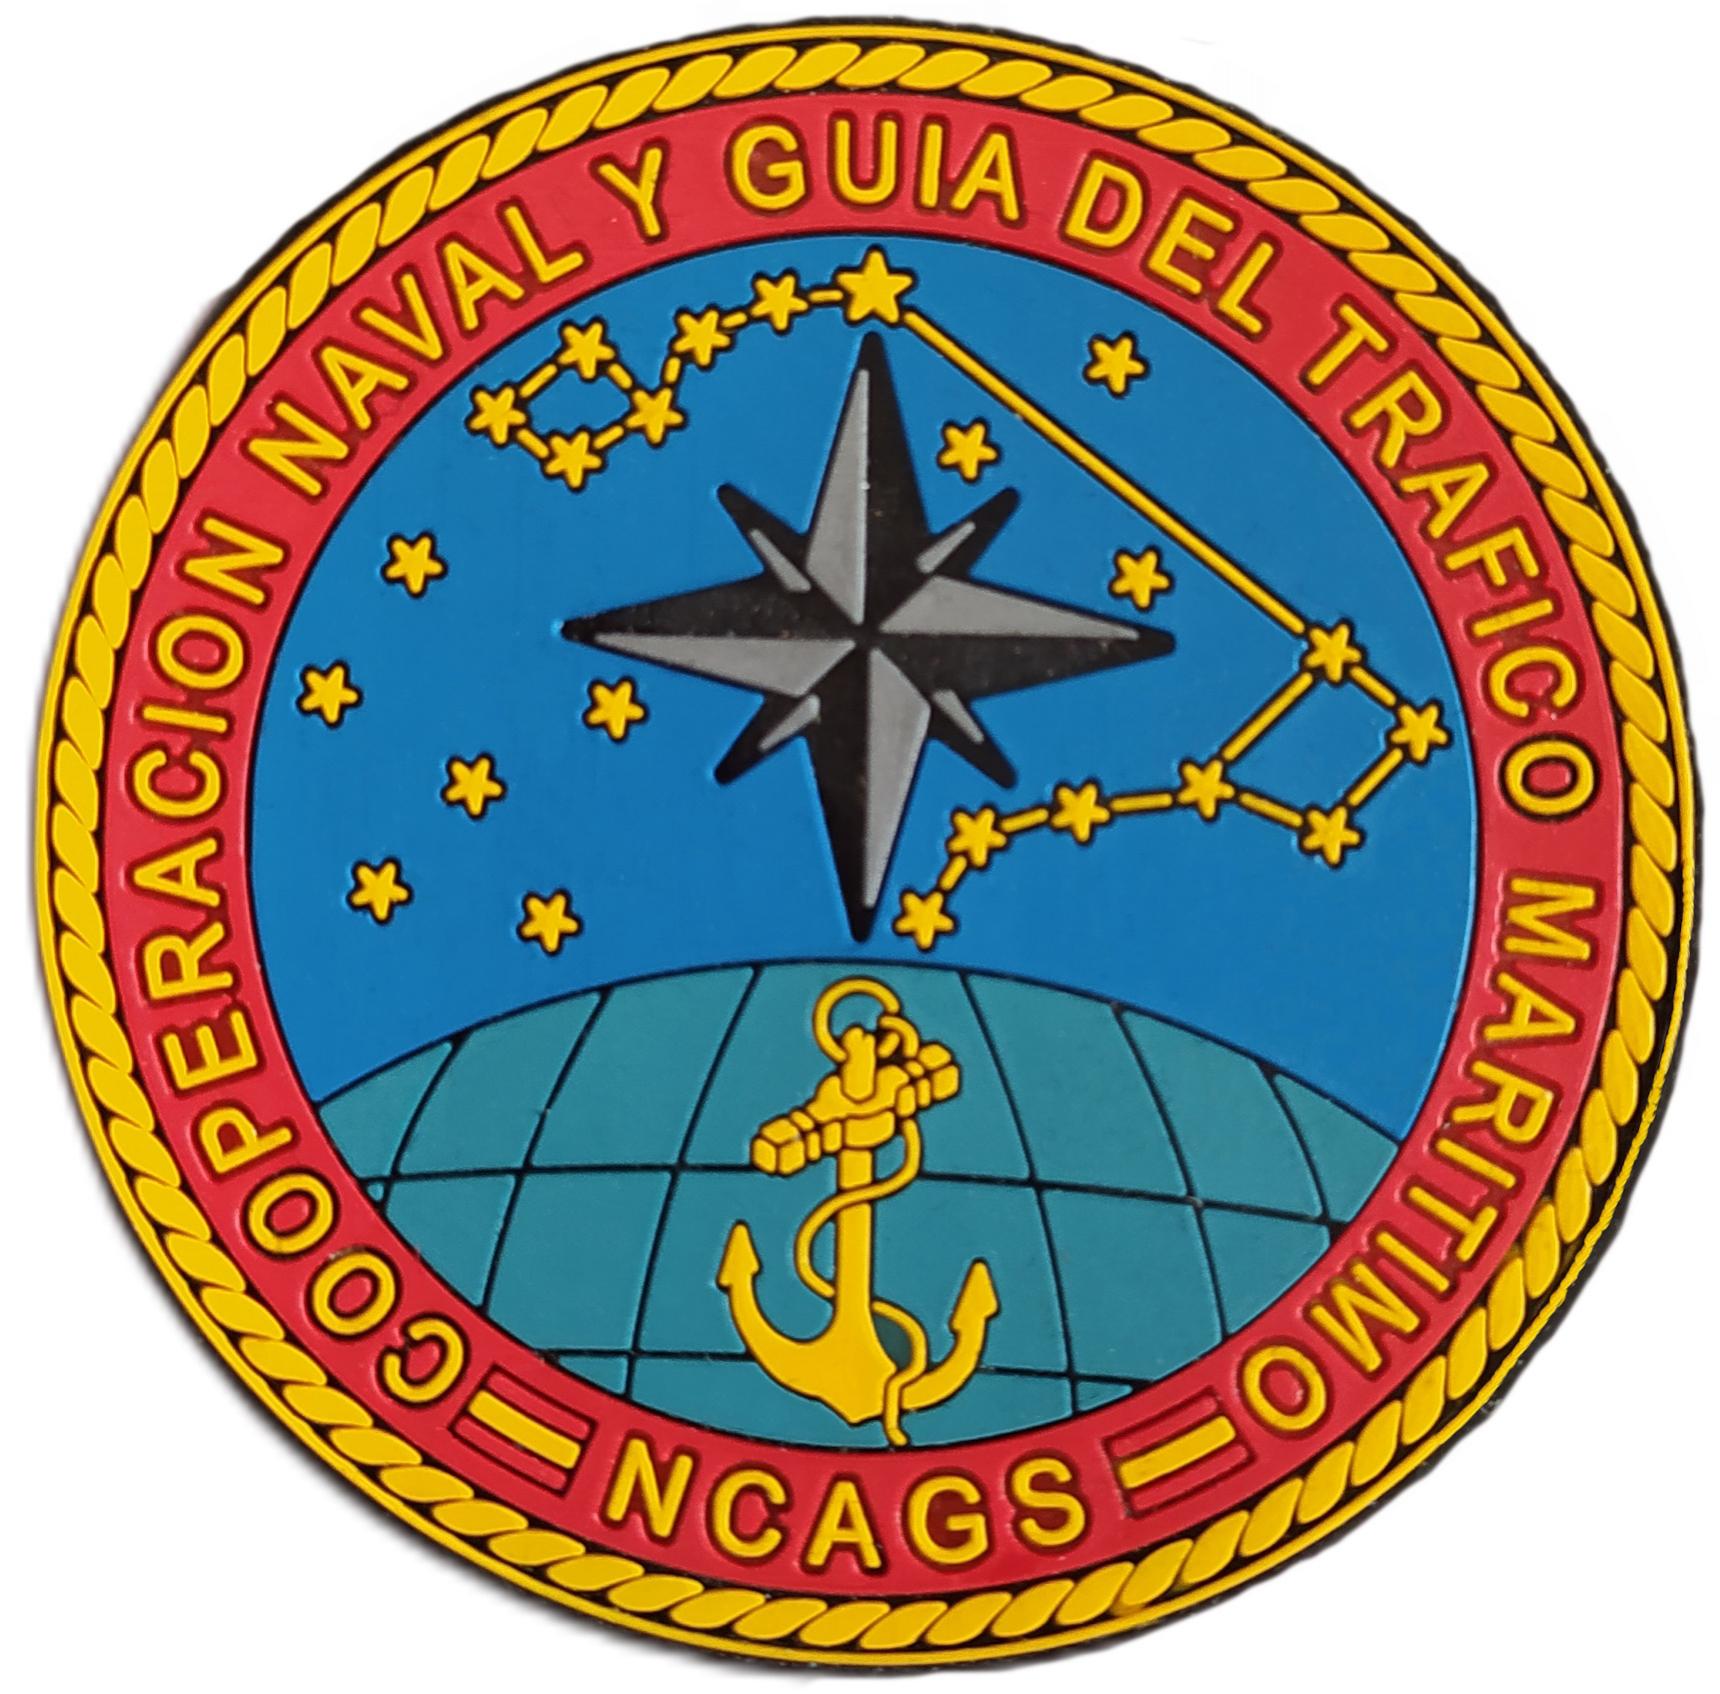 Ejército Armada Española Cooperación Naval y Guía del Tráfico Marítimo parche insignia emblema distintivo Navy